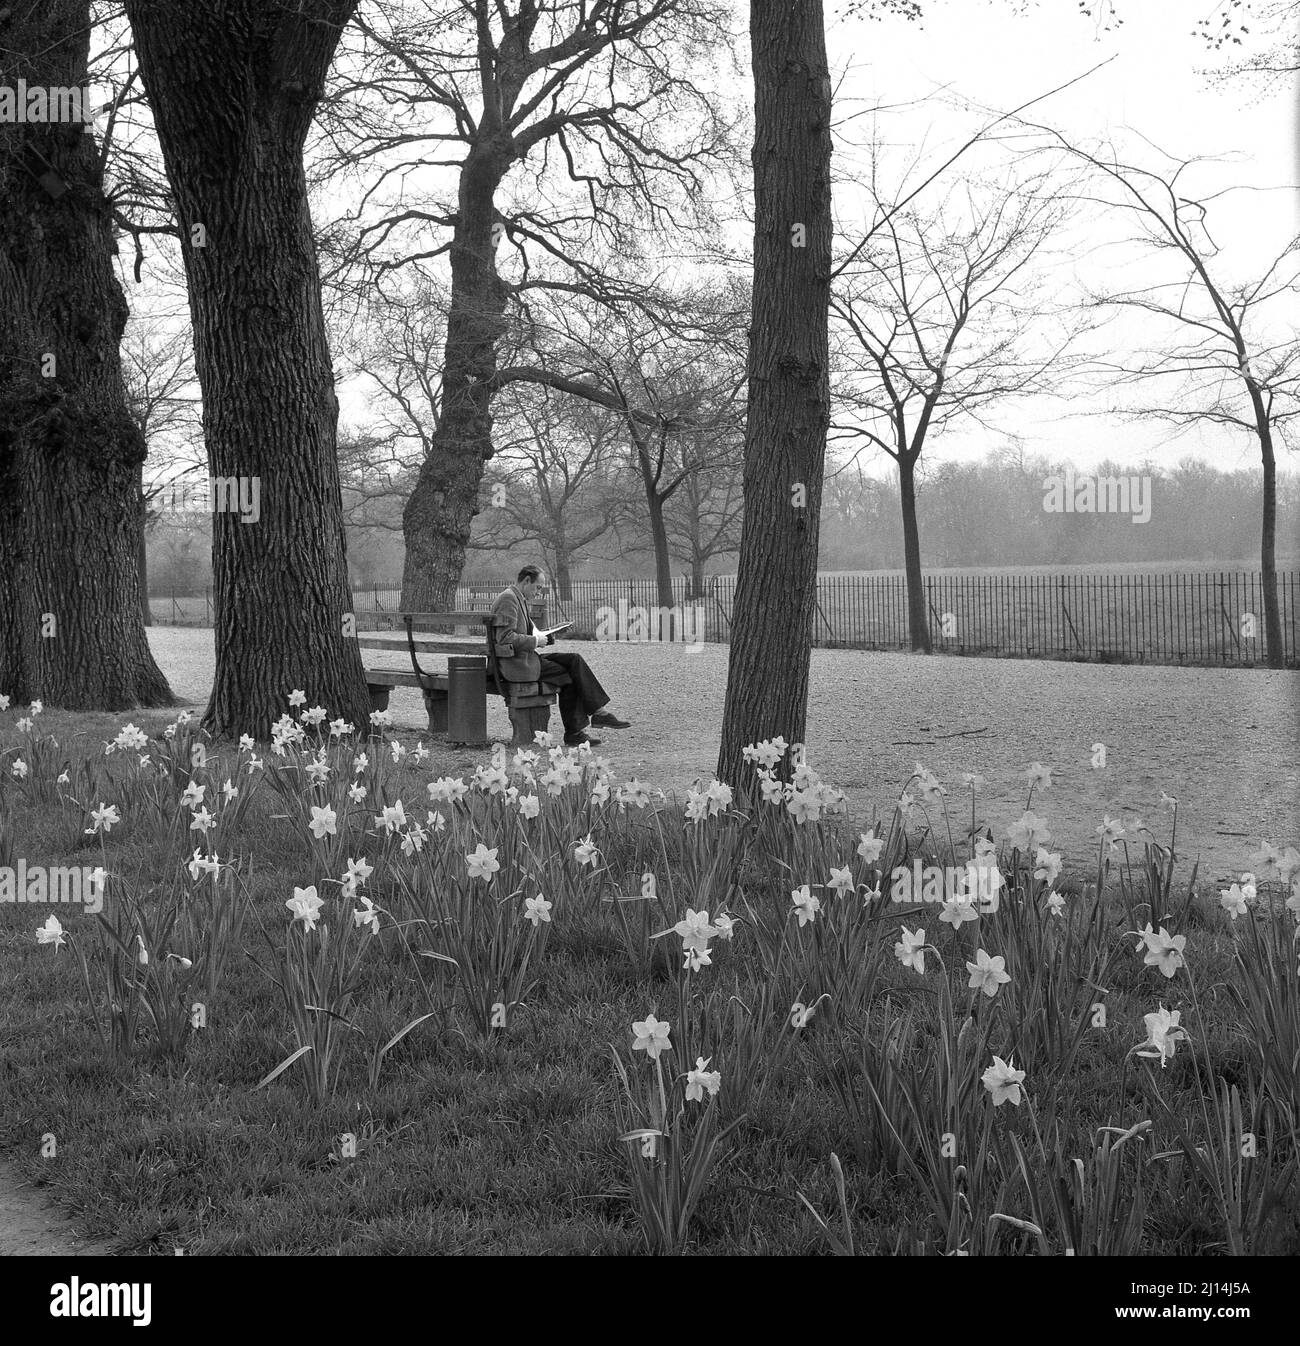 1960s, historisch, ein junger Mann, der auf einer Bank bei einem breiten Spaziergang auf der Christ Church Meadow, Oxford, England, Großbritannien, sitzt, mit blühenden Frühlingsdafflaten. Stockfoto